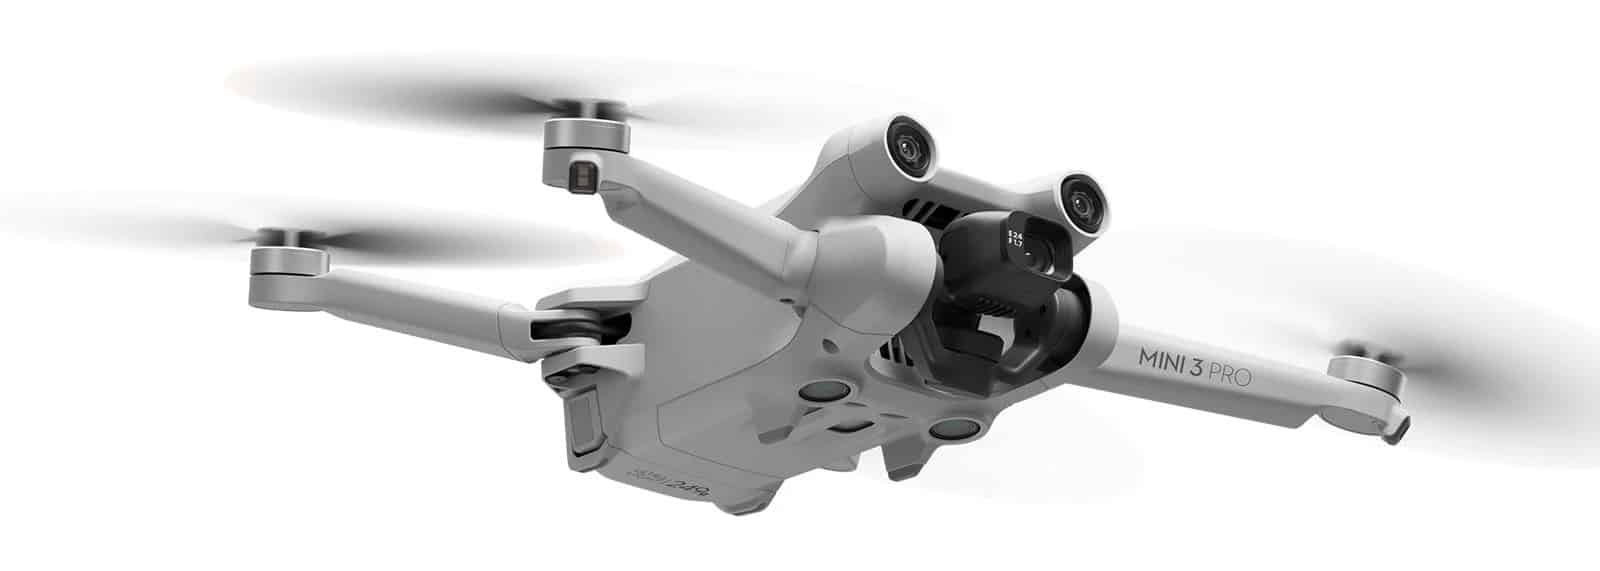 DJI ra mắt Mini 3 Pro, drone dưới 249g nhưng đủ tính năng với cảm biến 48MP và quay 4K